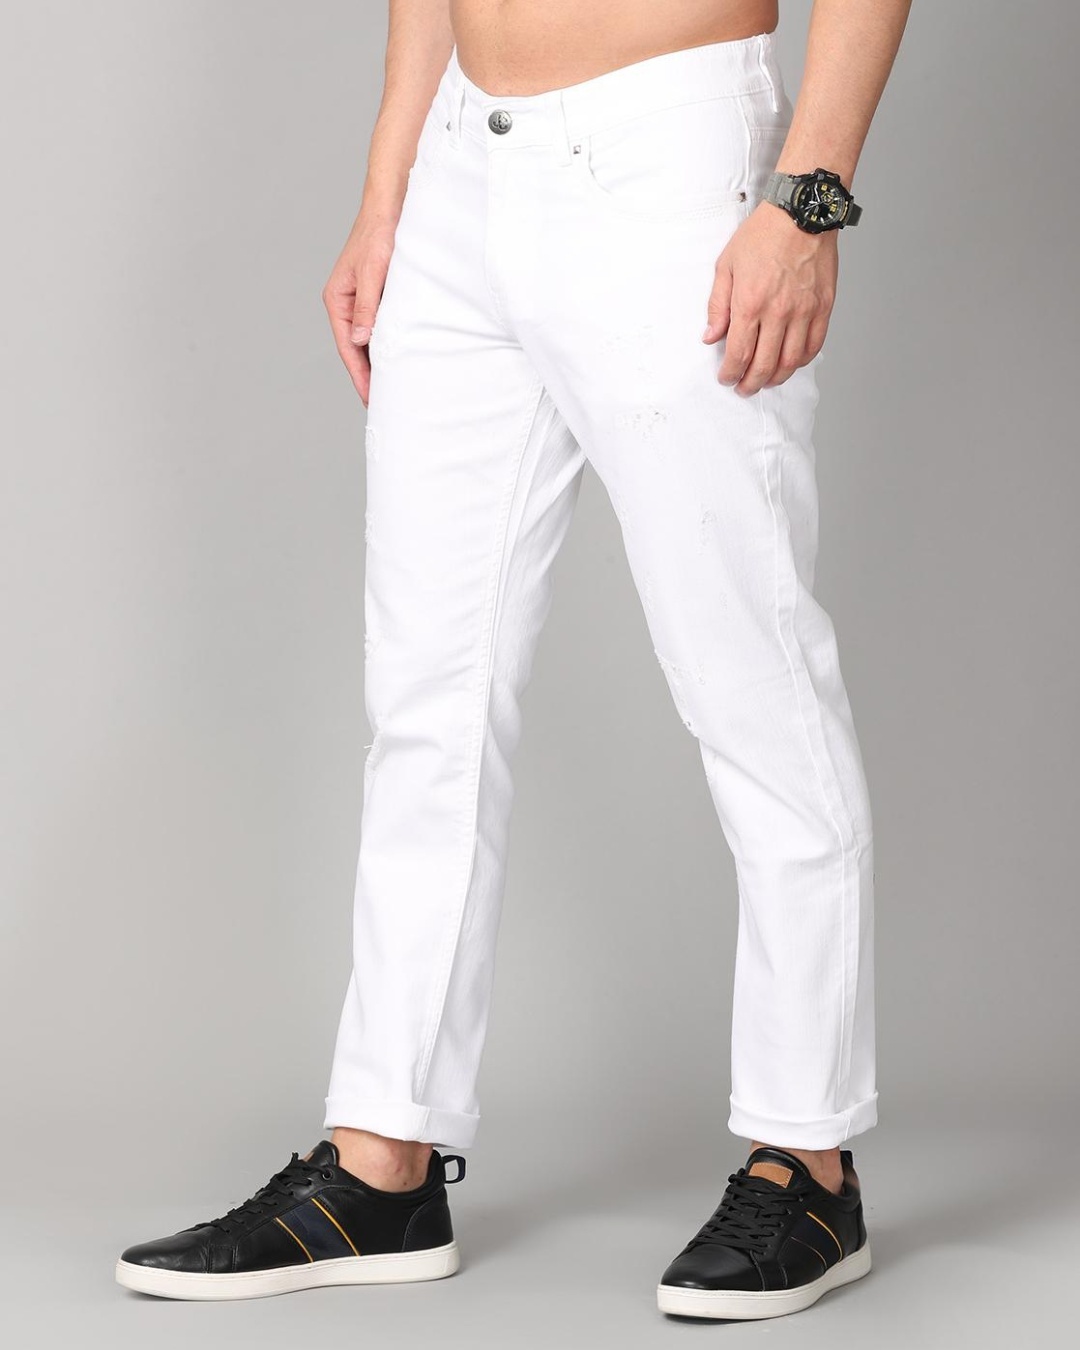 Buy Men's White Slim Fit Jeans for Men White Online at Bewakoof